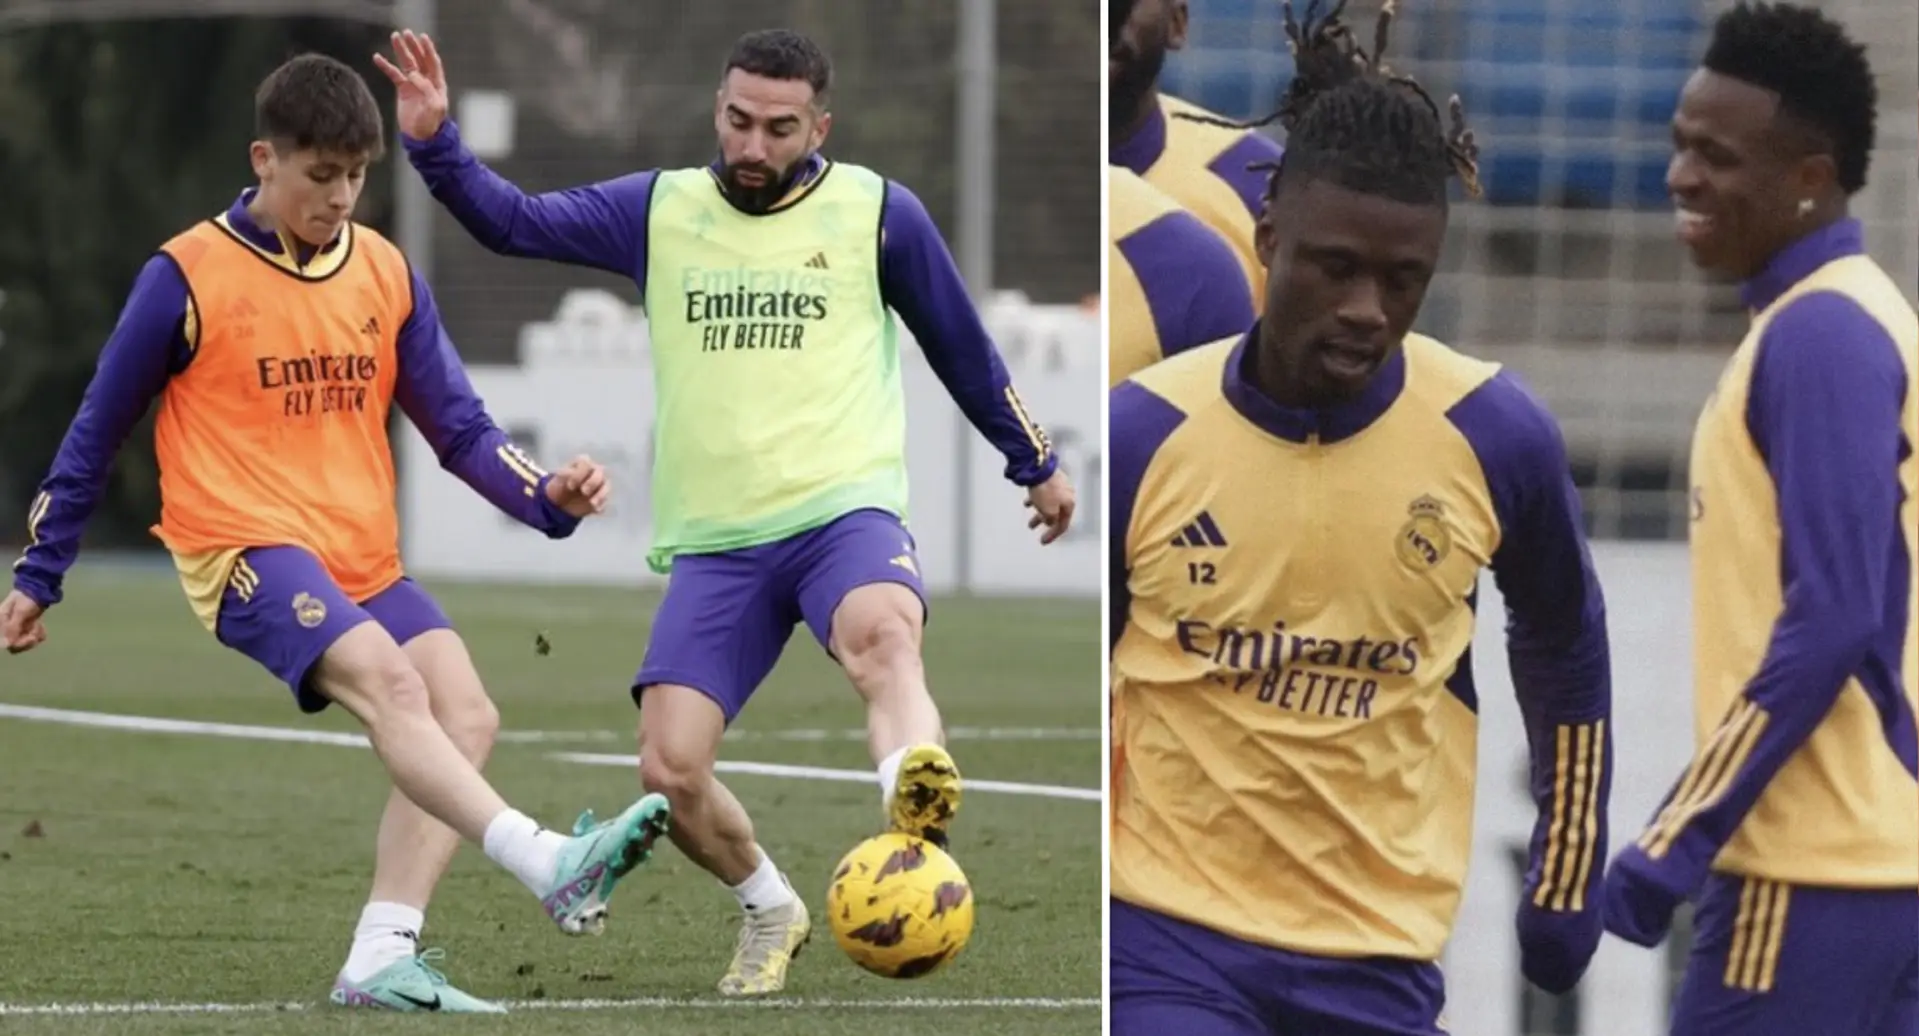 Los jugadores del Real Madrid vuelven a los entrenamientos tras el parón navideño, 4 lesionados están disponibles